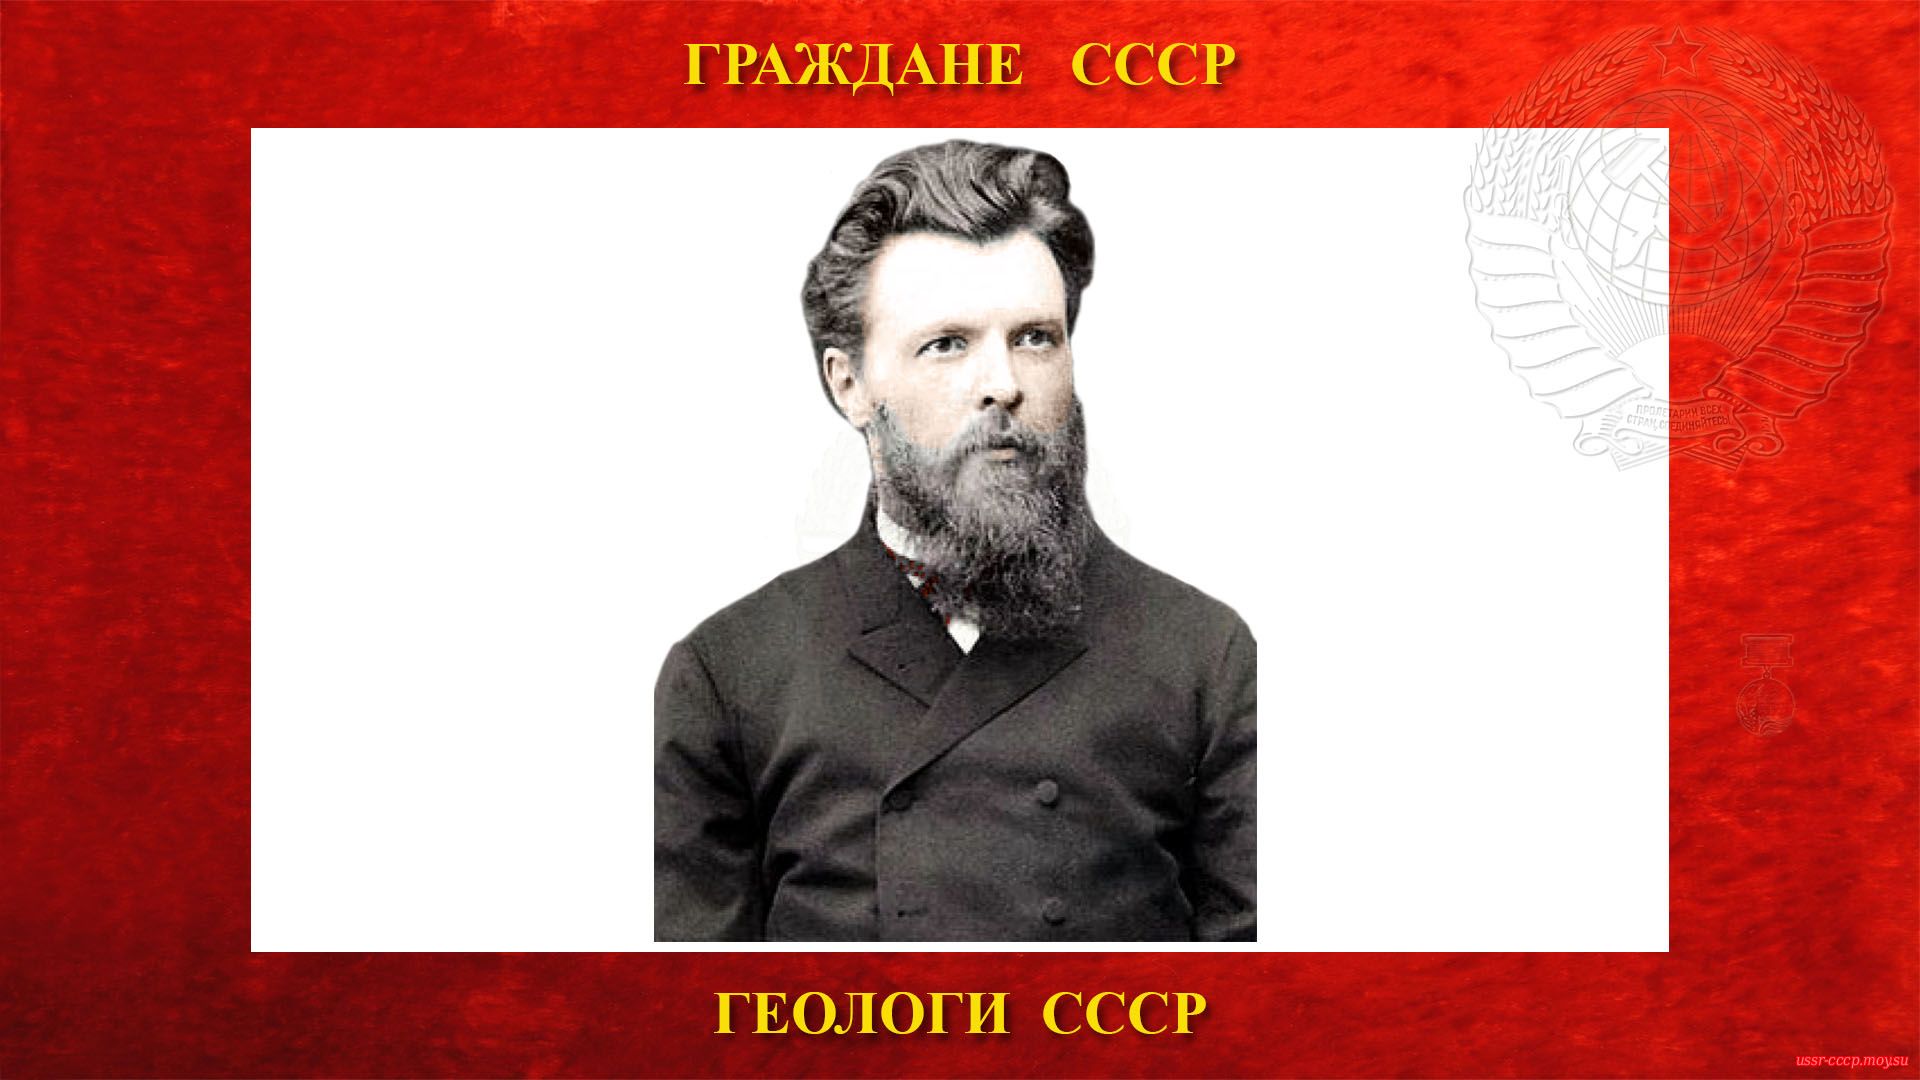 Павлов Алексей Петрович — Русский и Советский геолог